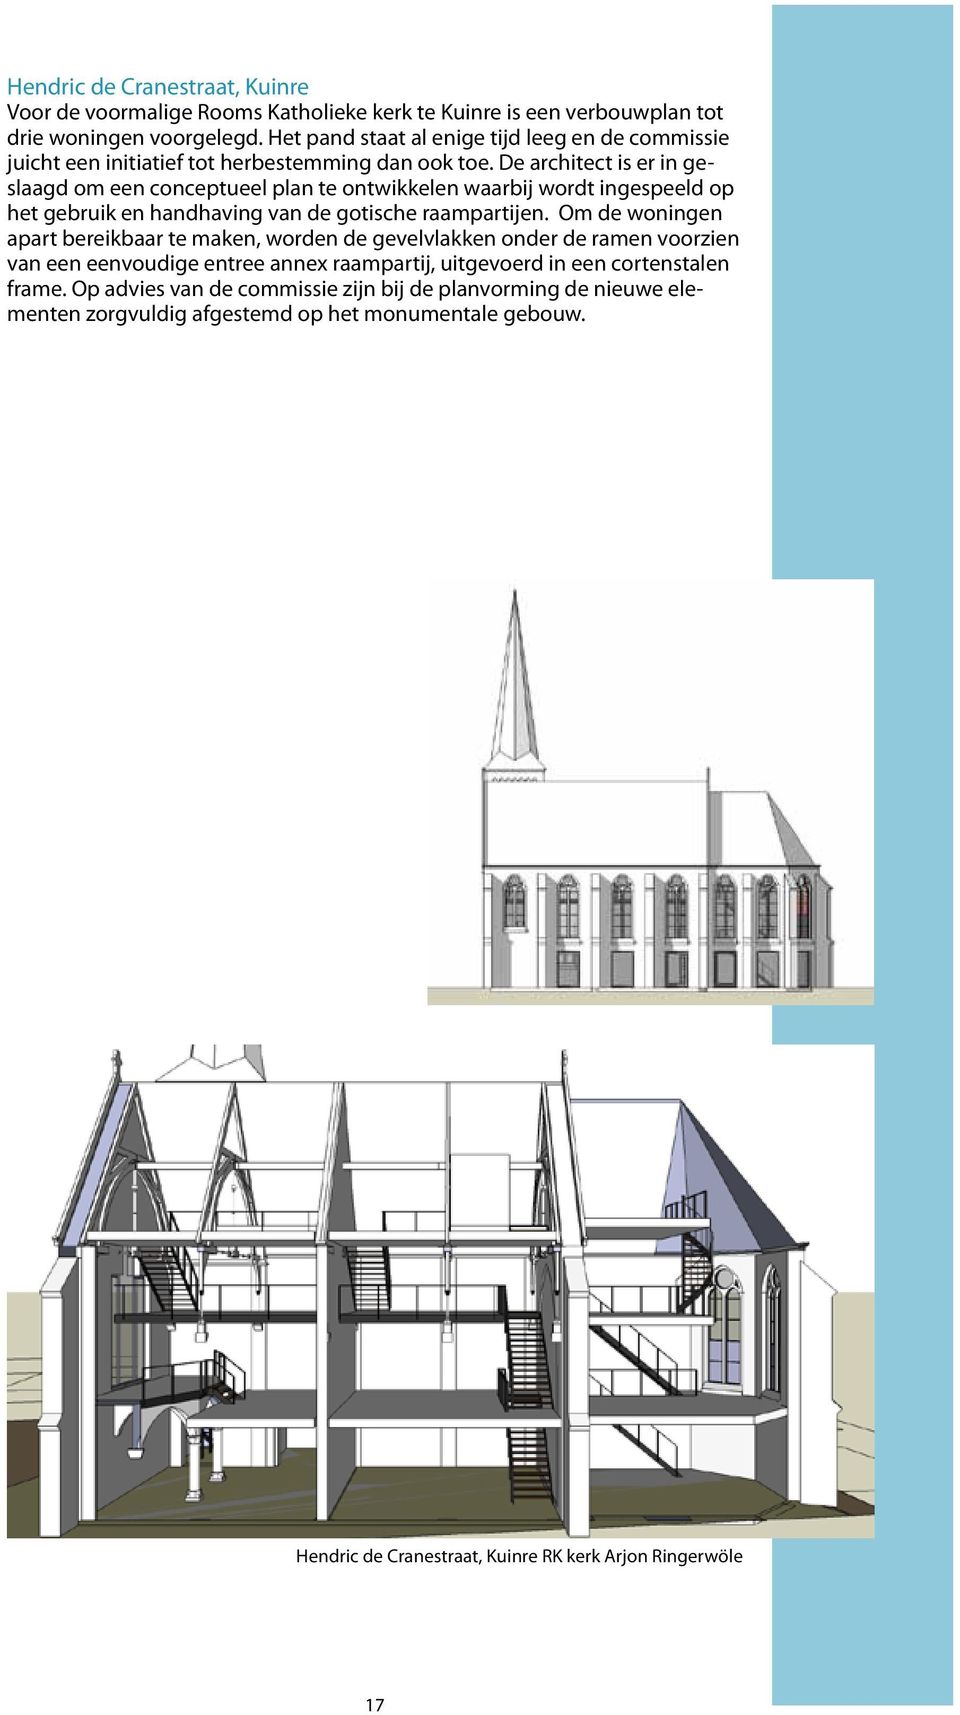 De architect is er in geslaagd om een conceptueel plan te ontwikkelen waarbij wordt ingespeeld op het gebruik en handhaving van de gotische raampartijen.